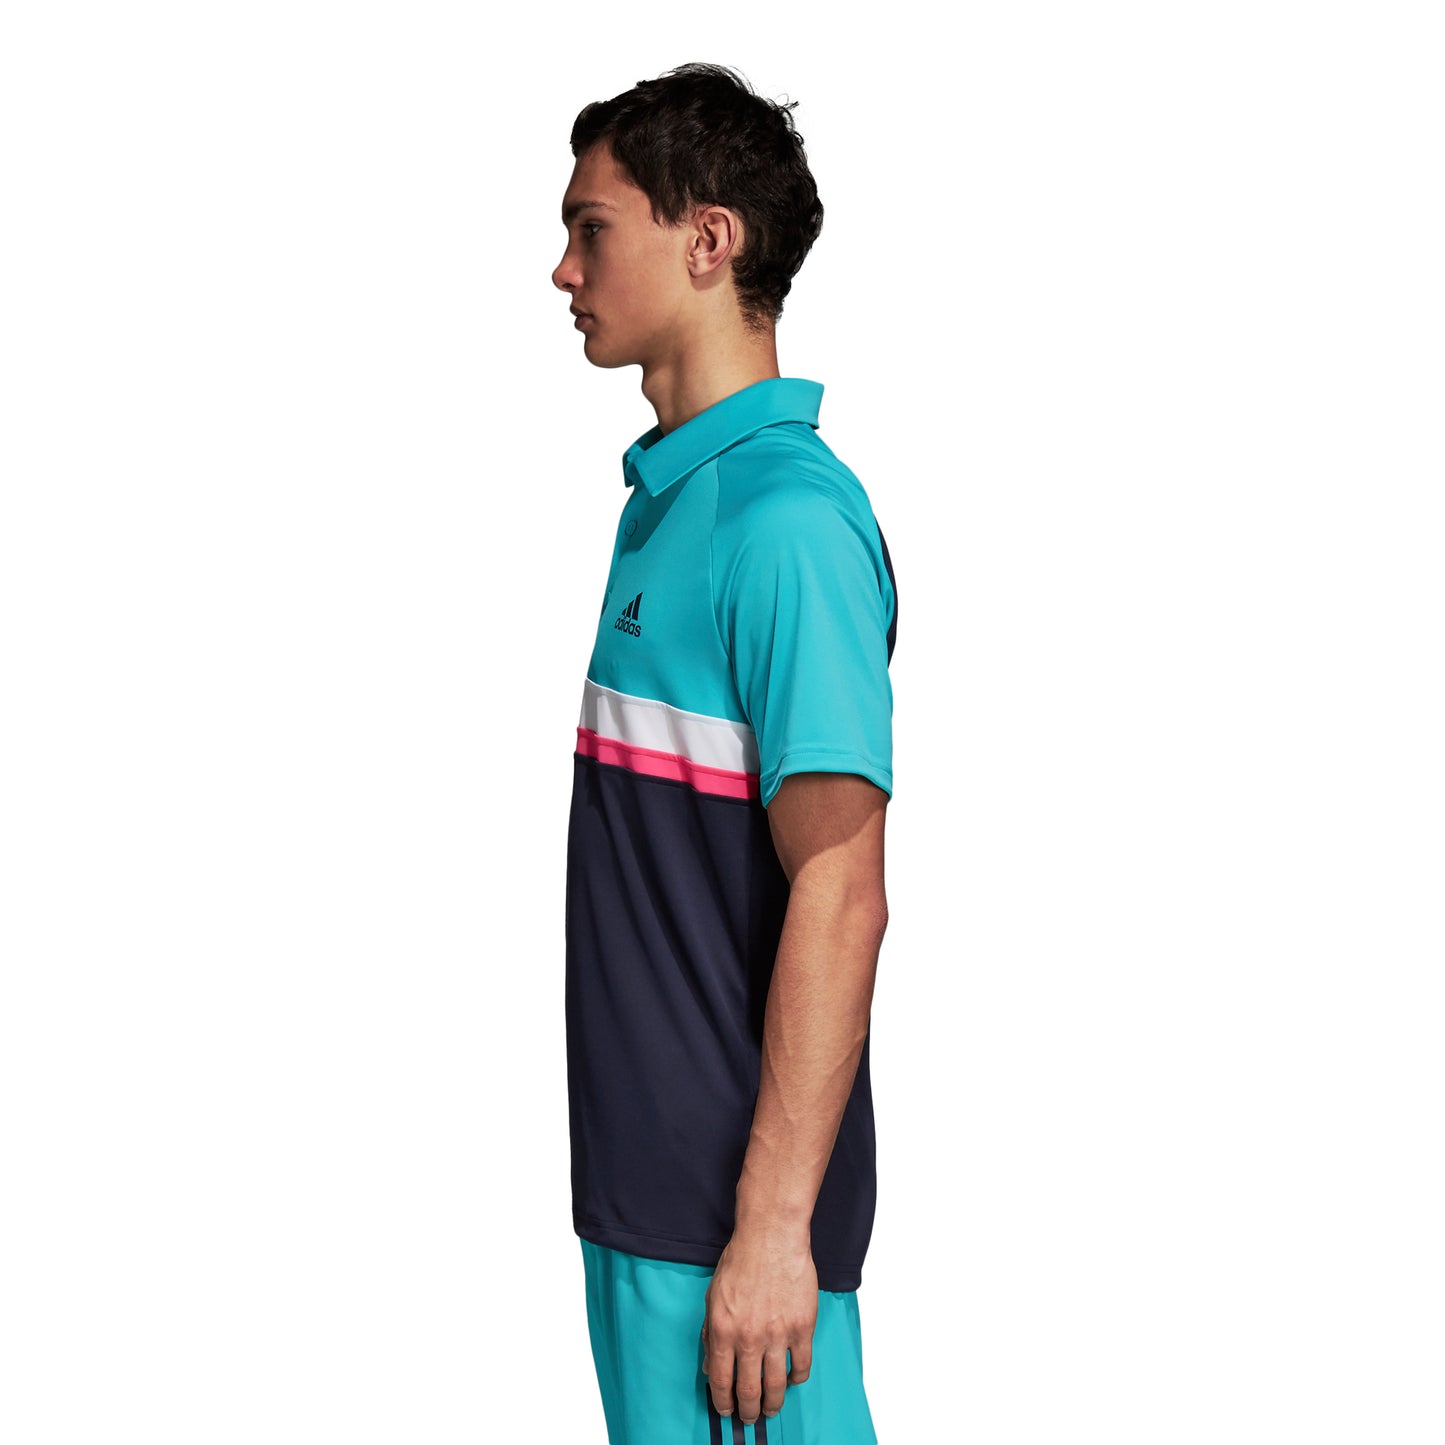 adidas Men's Polo Club - Color Block Hi-Res Aqua D98739 - VuTennis